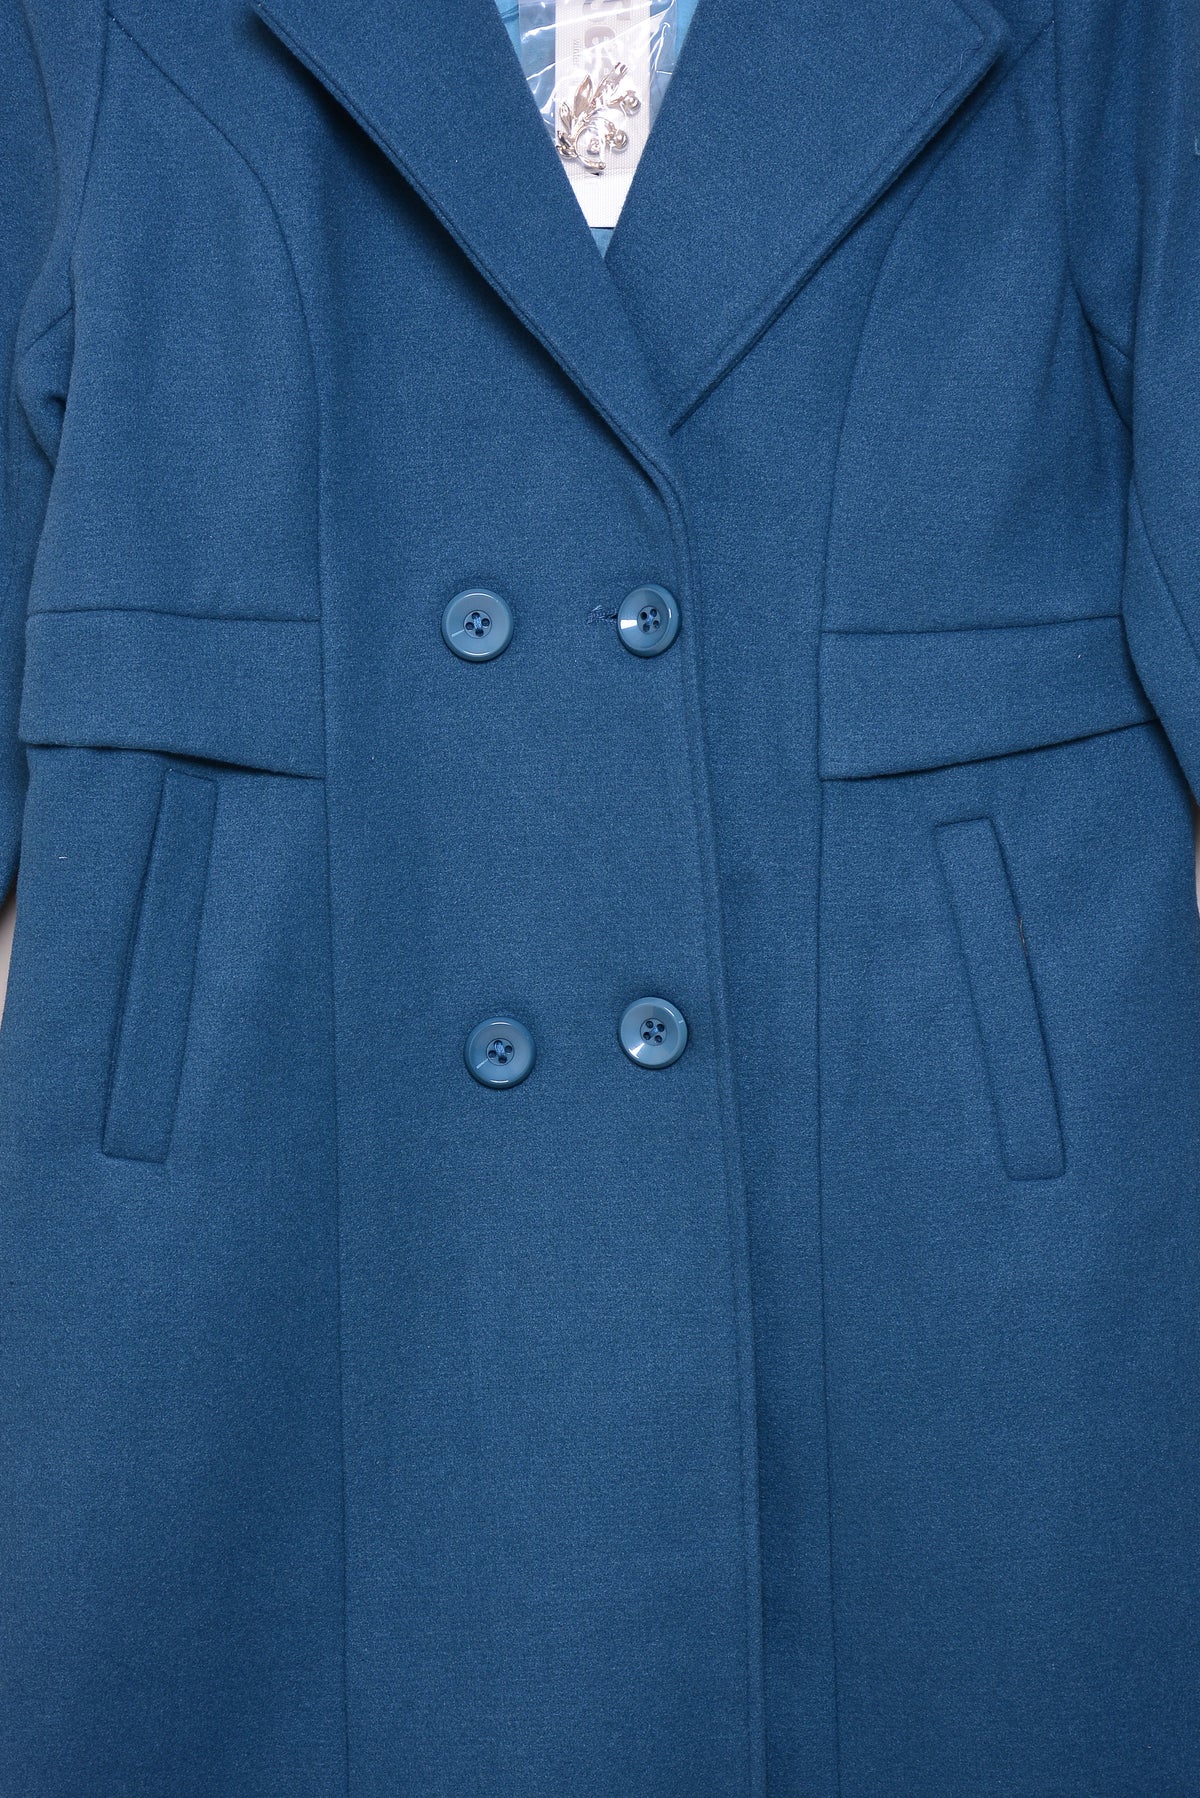 Ladies Winter Long Coats ykn-586 Zink